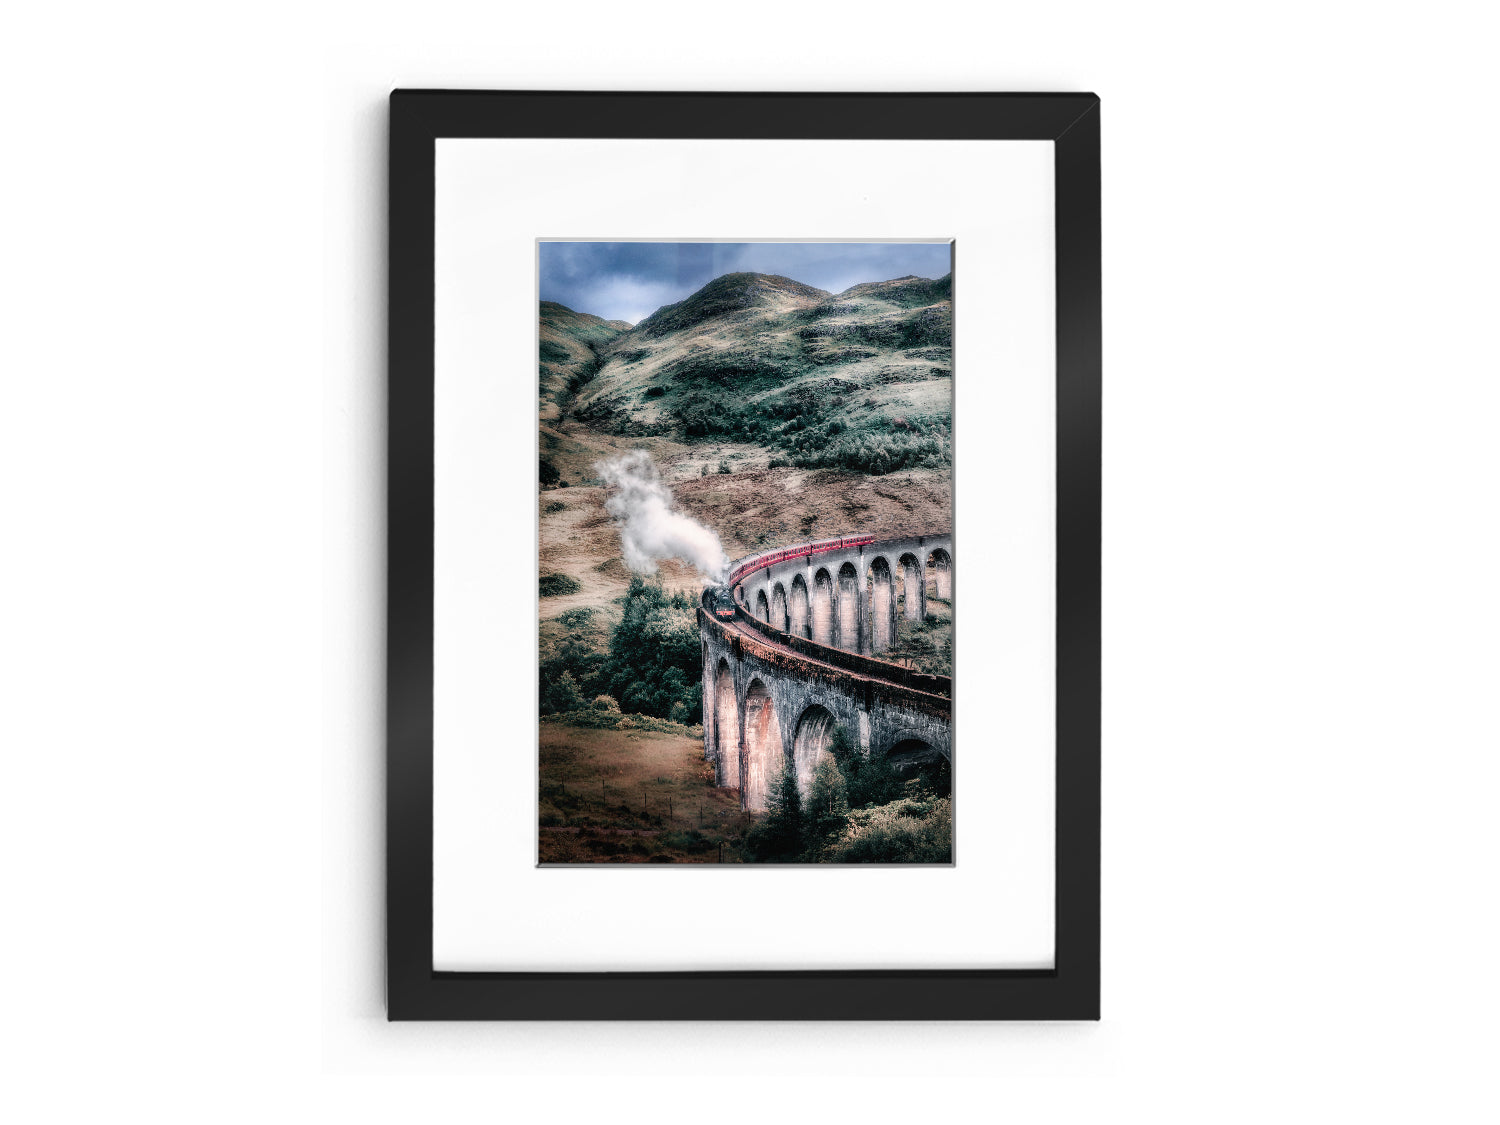 Glenfinnen Viaduct - Scotland